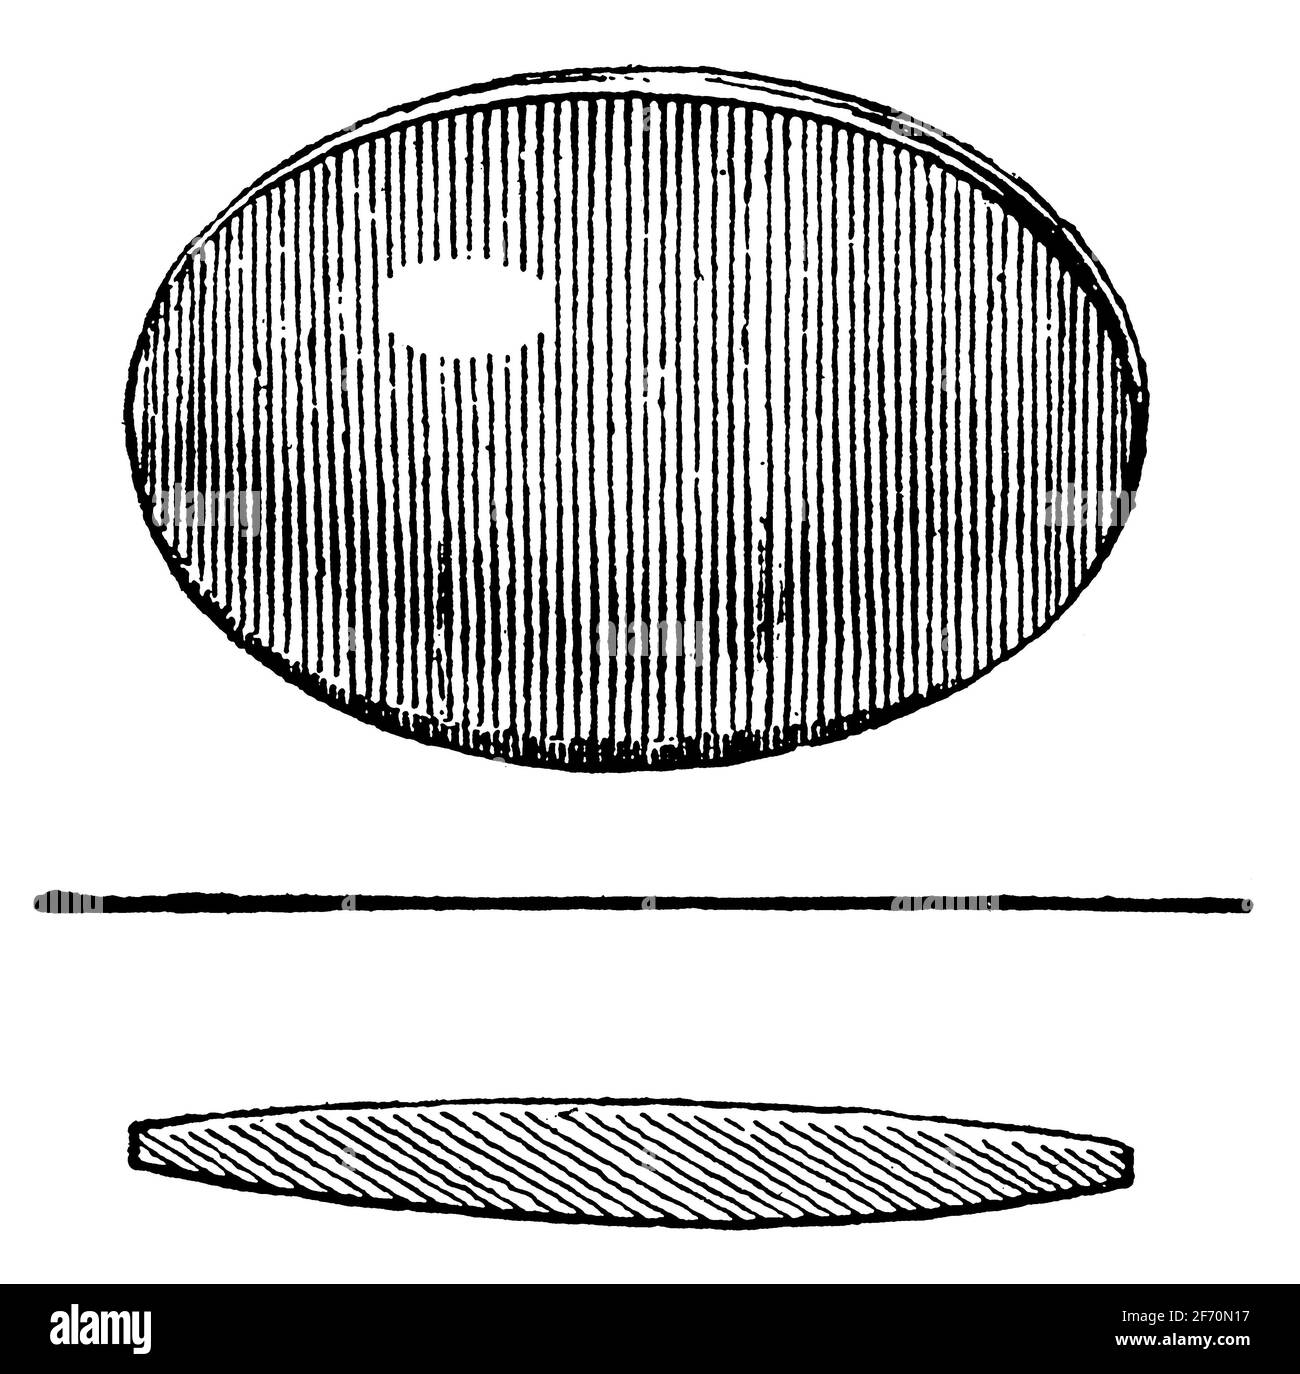 Lentille concave-convexe (périscopique). Illustration du 19e siècle. Allemagne. Arrière-plan blanc. Banque D'Images